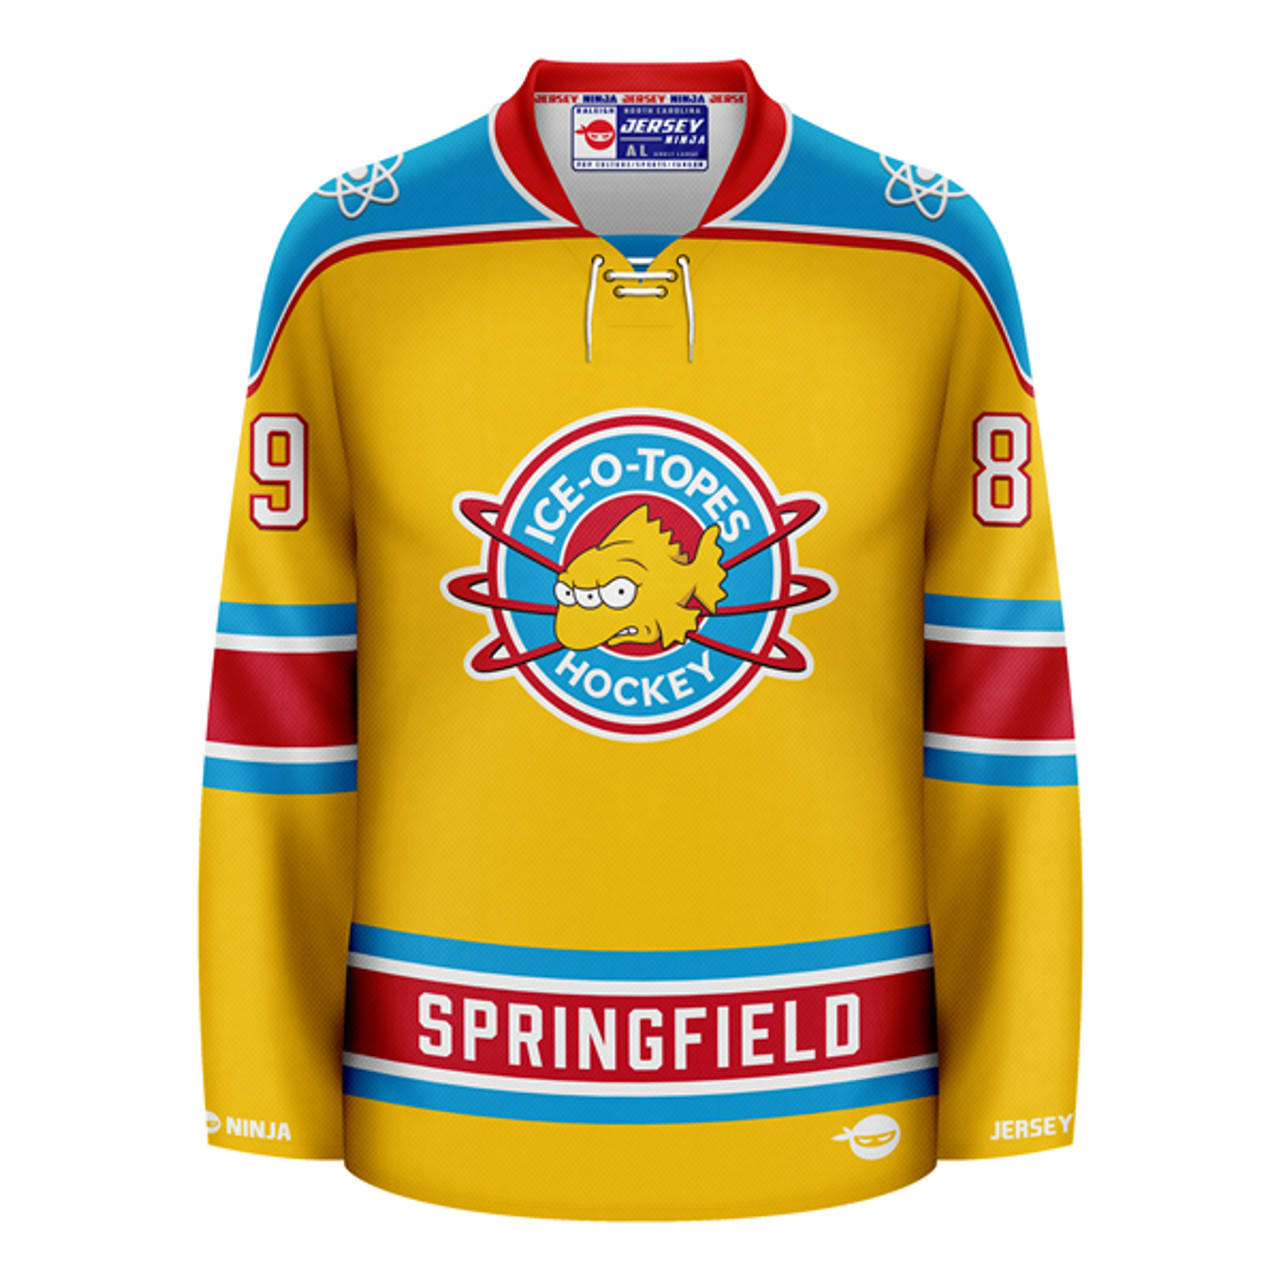 Mail Day! Springfield Ice-O-Topes Jersey!! : r/hockeyjerseys